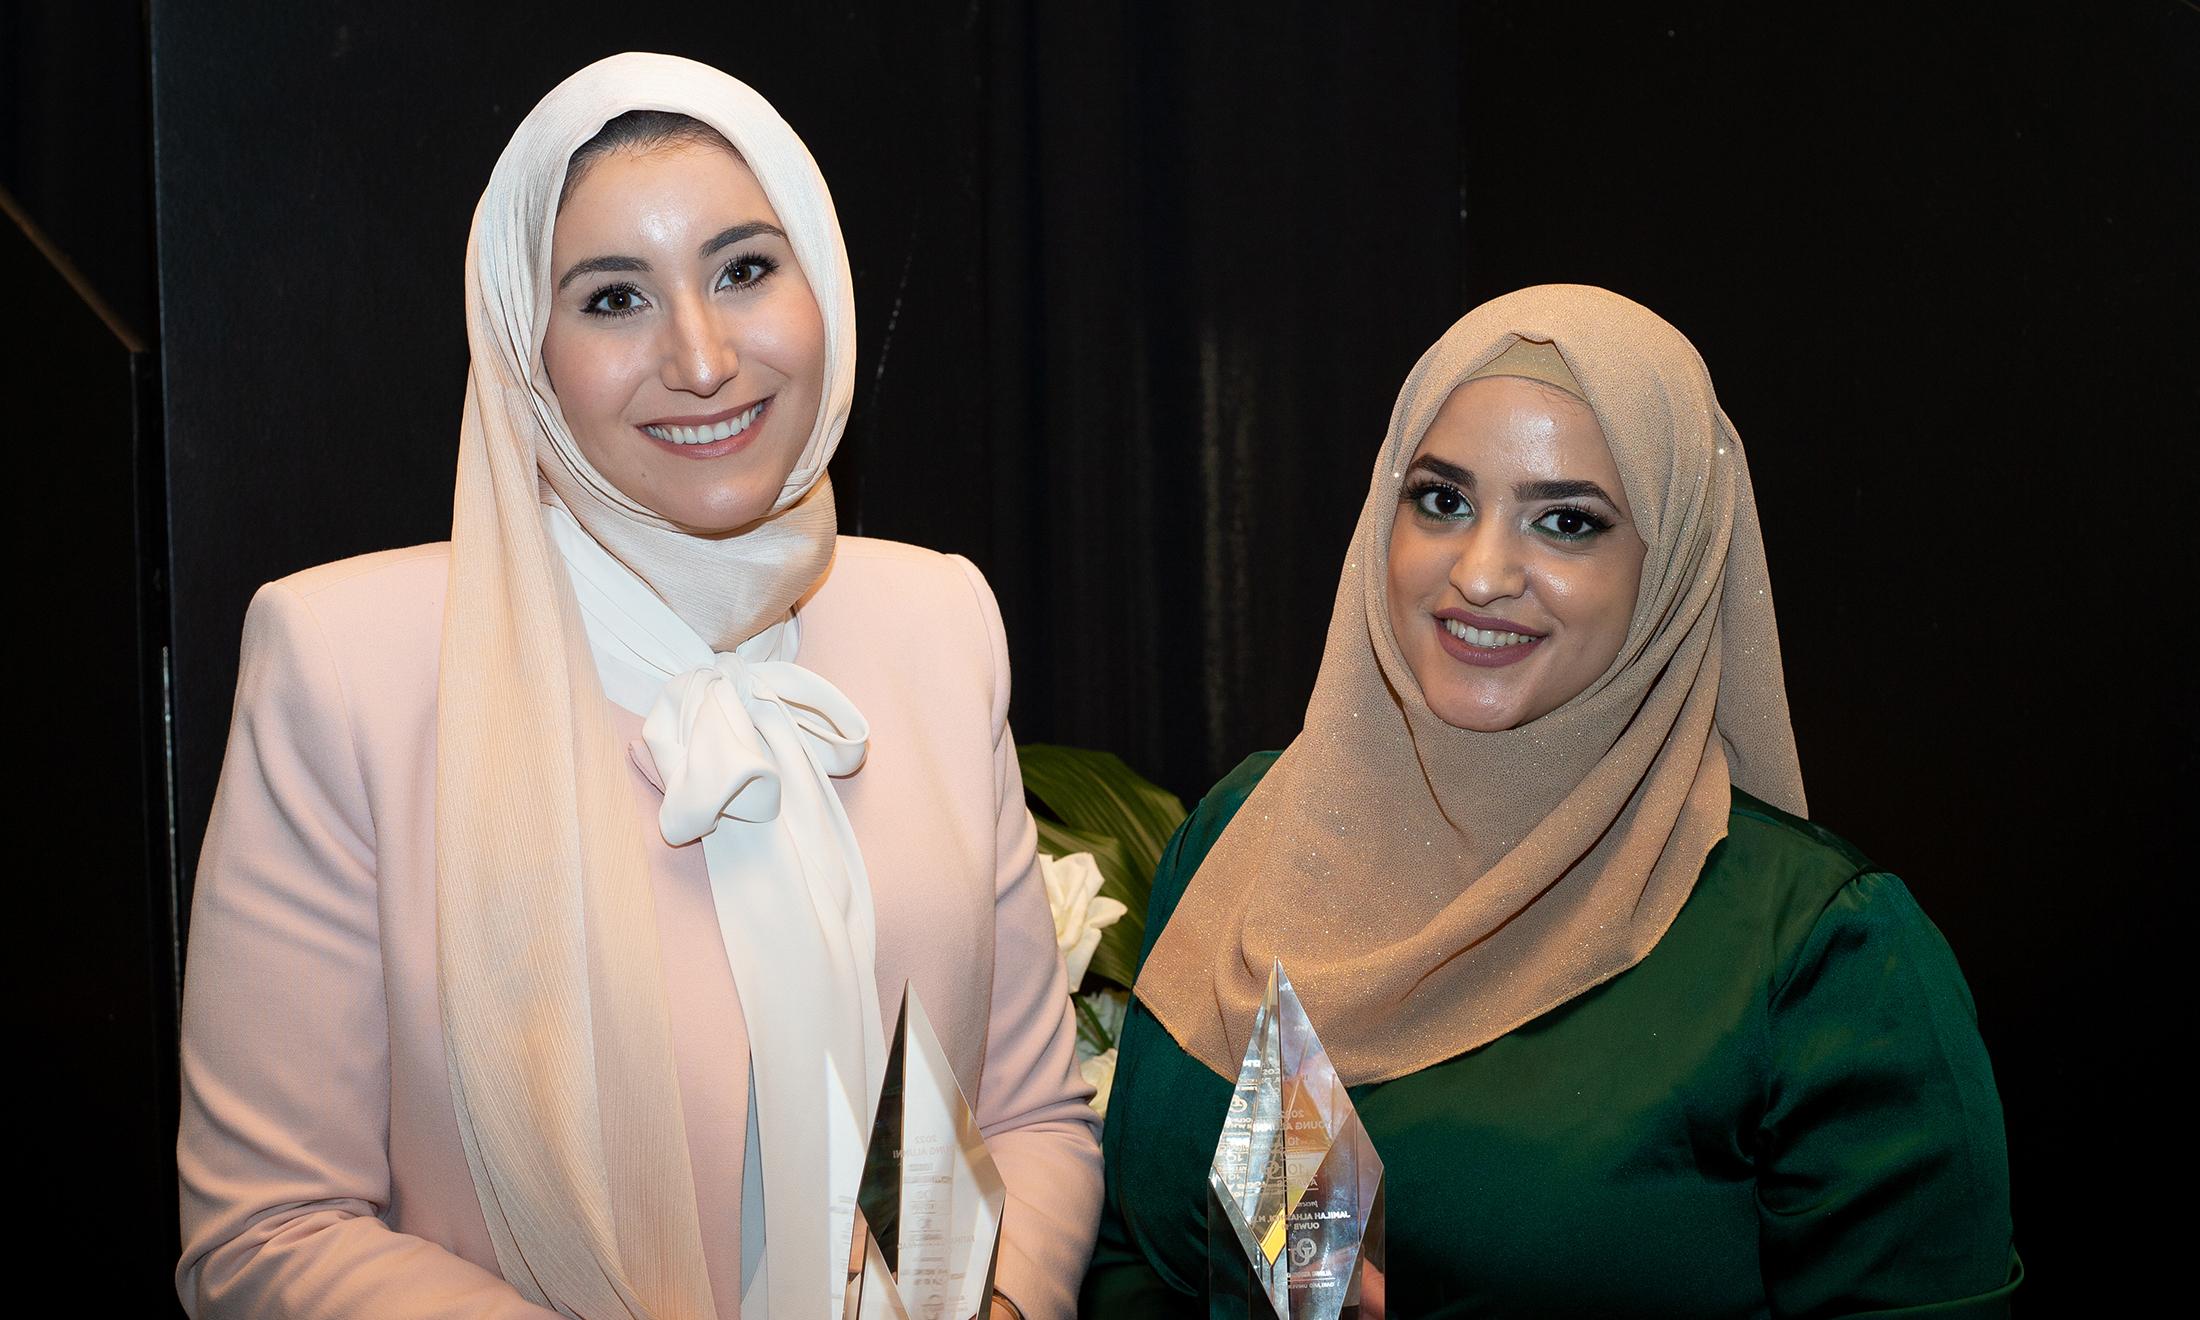 An image of Jamilah Alhashidi and Fatima Fahs